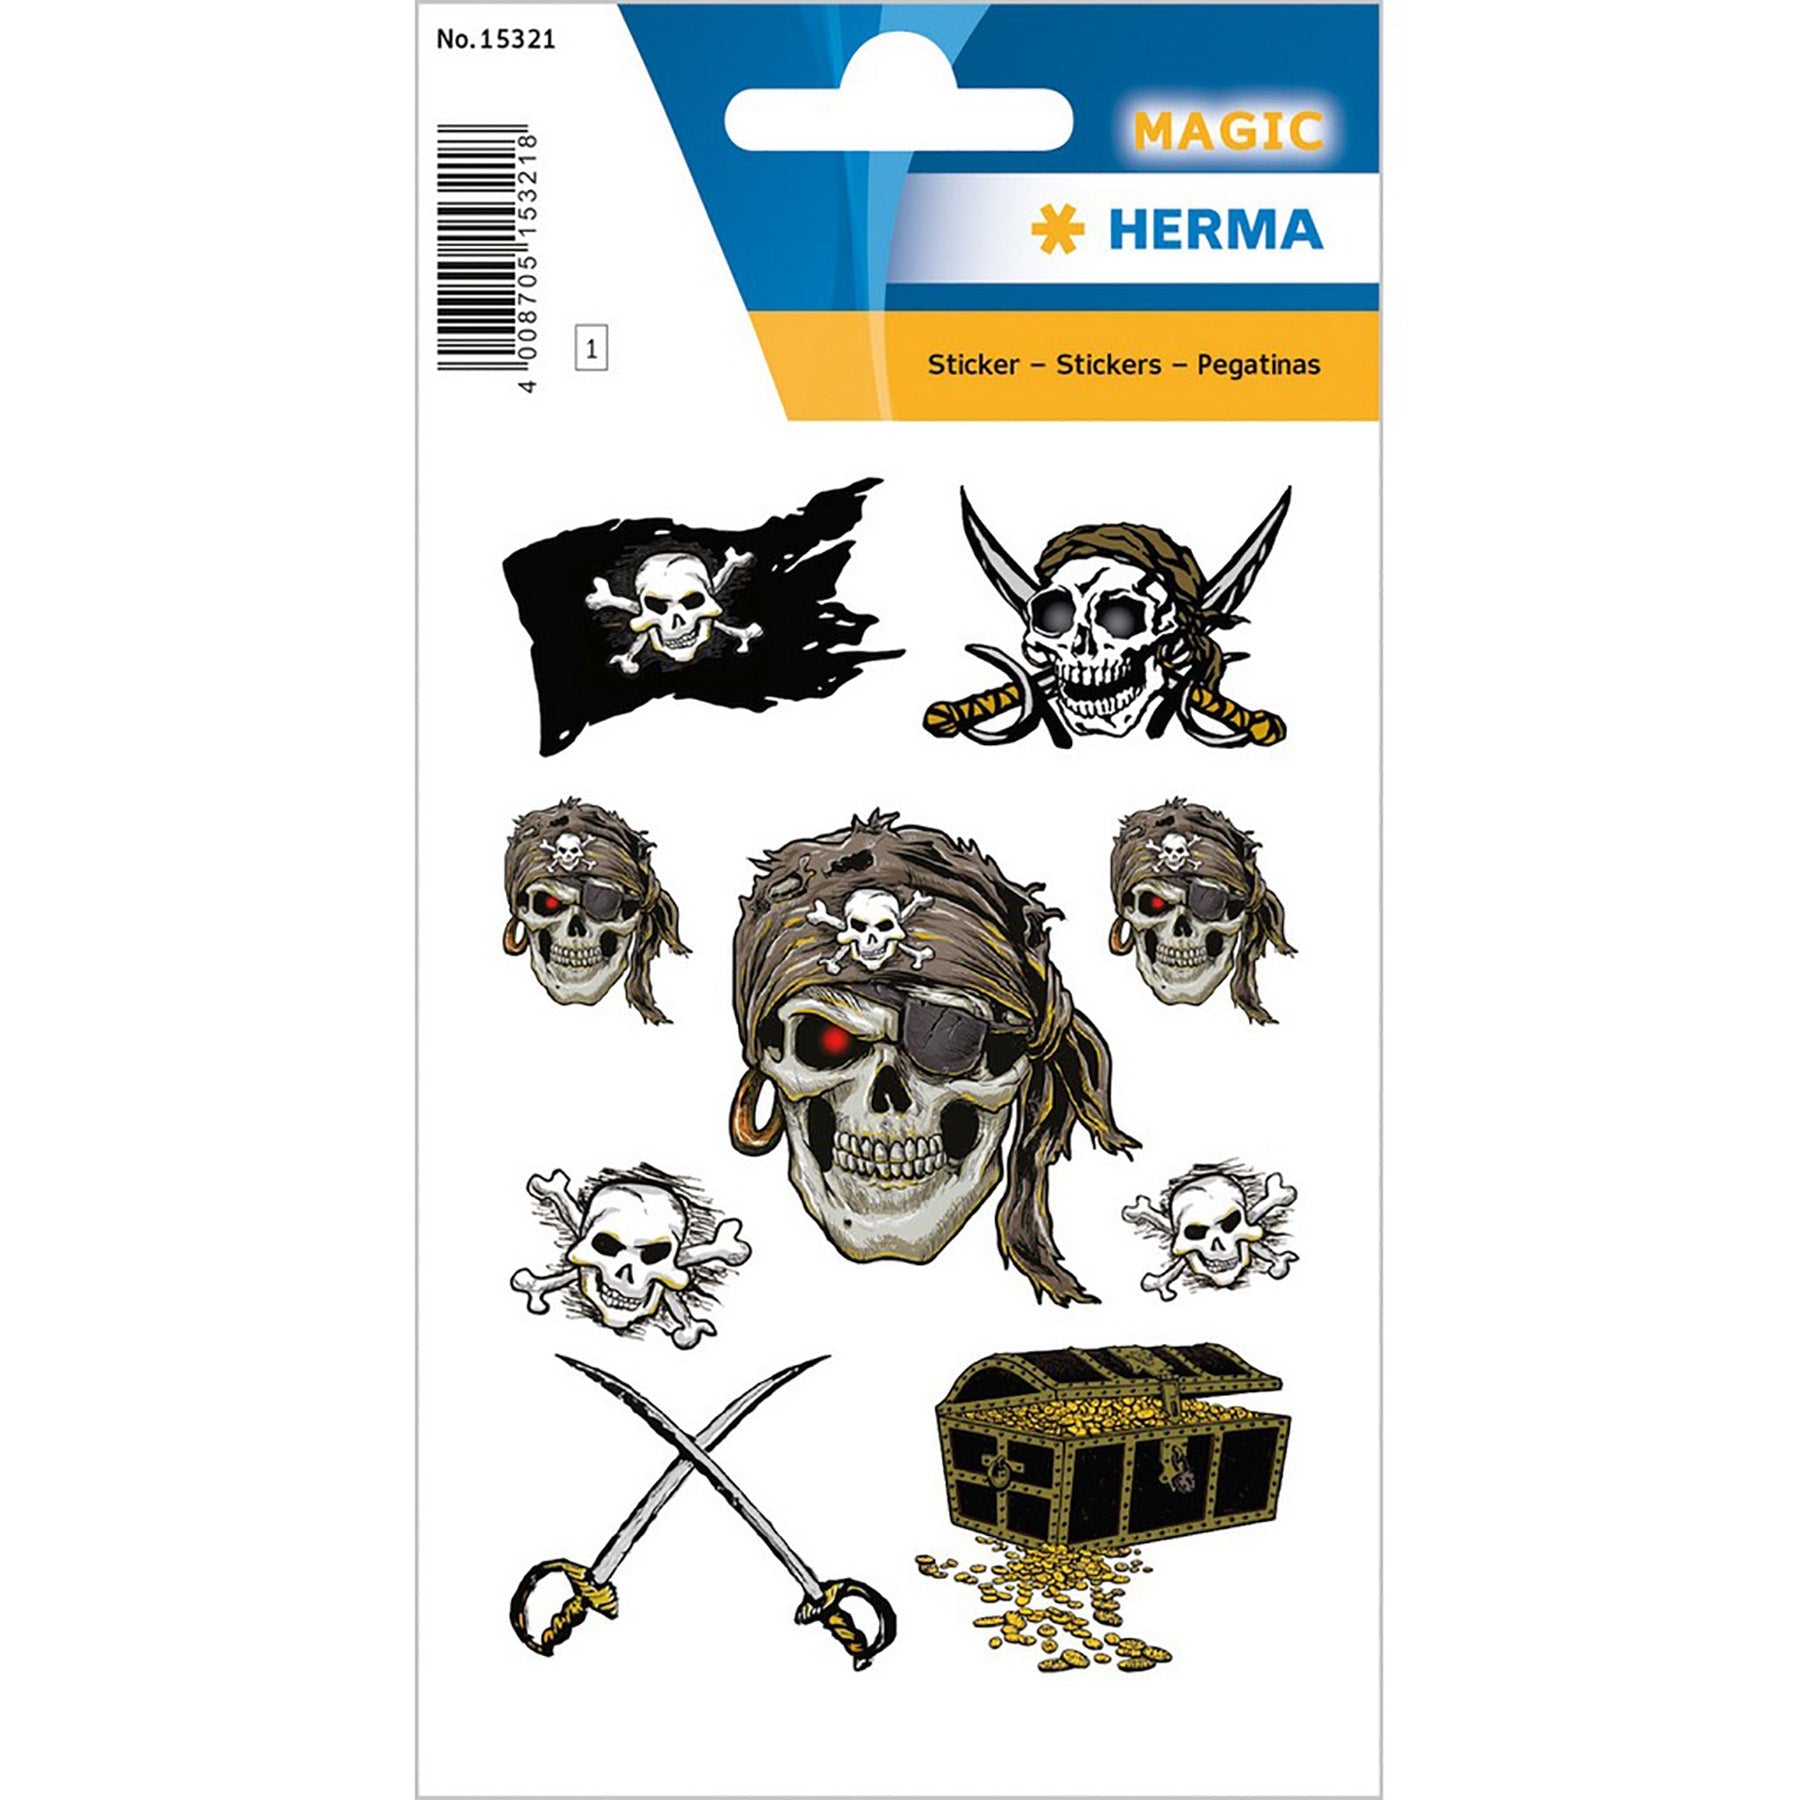 Herma Magic Stickers Pirate Glitter Foil 4.75x3.1in Sheet